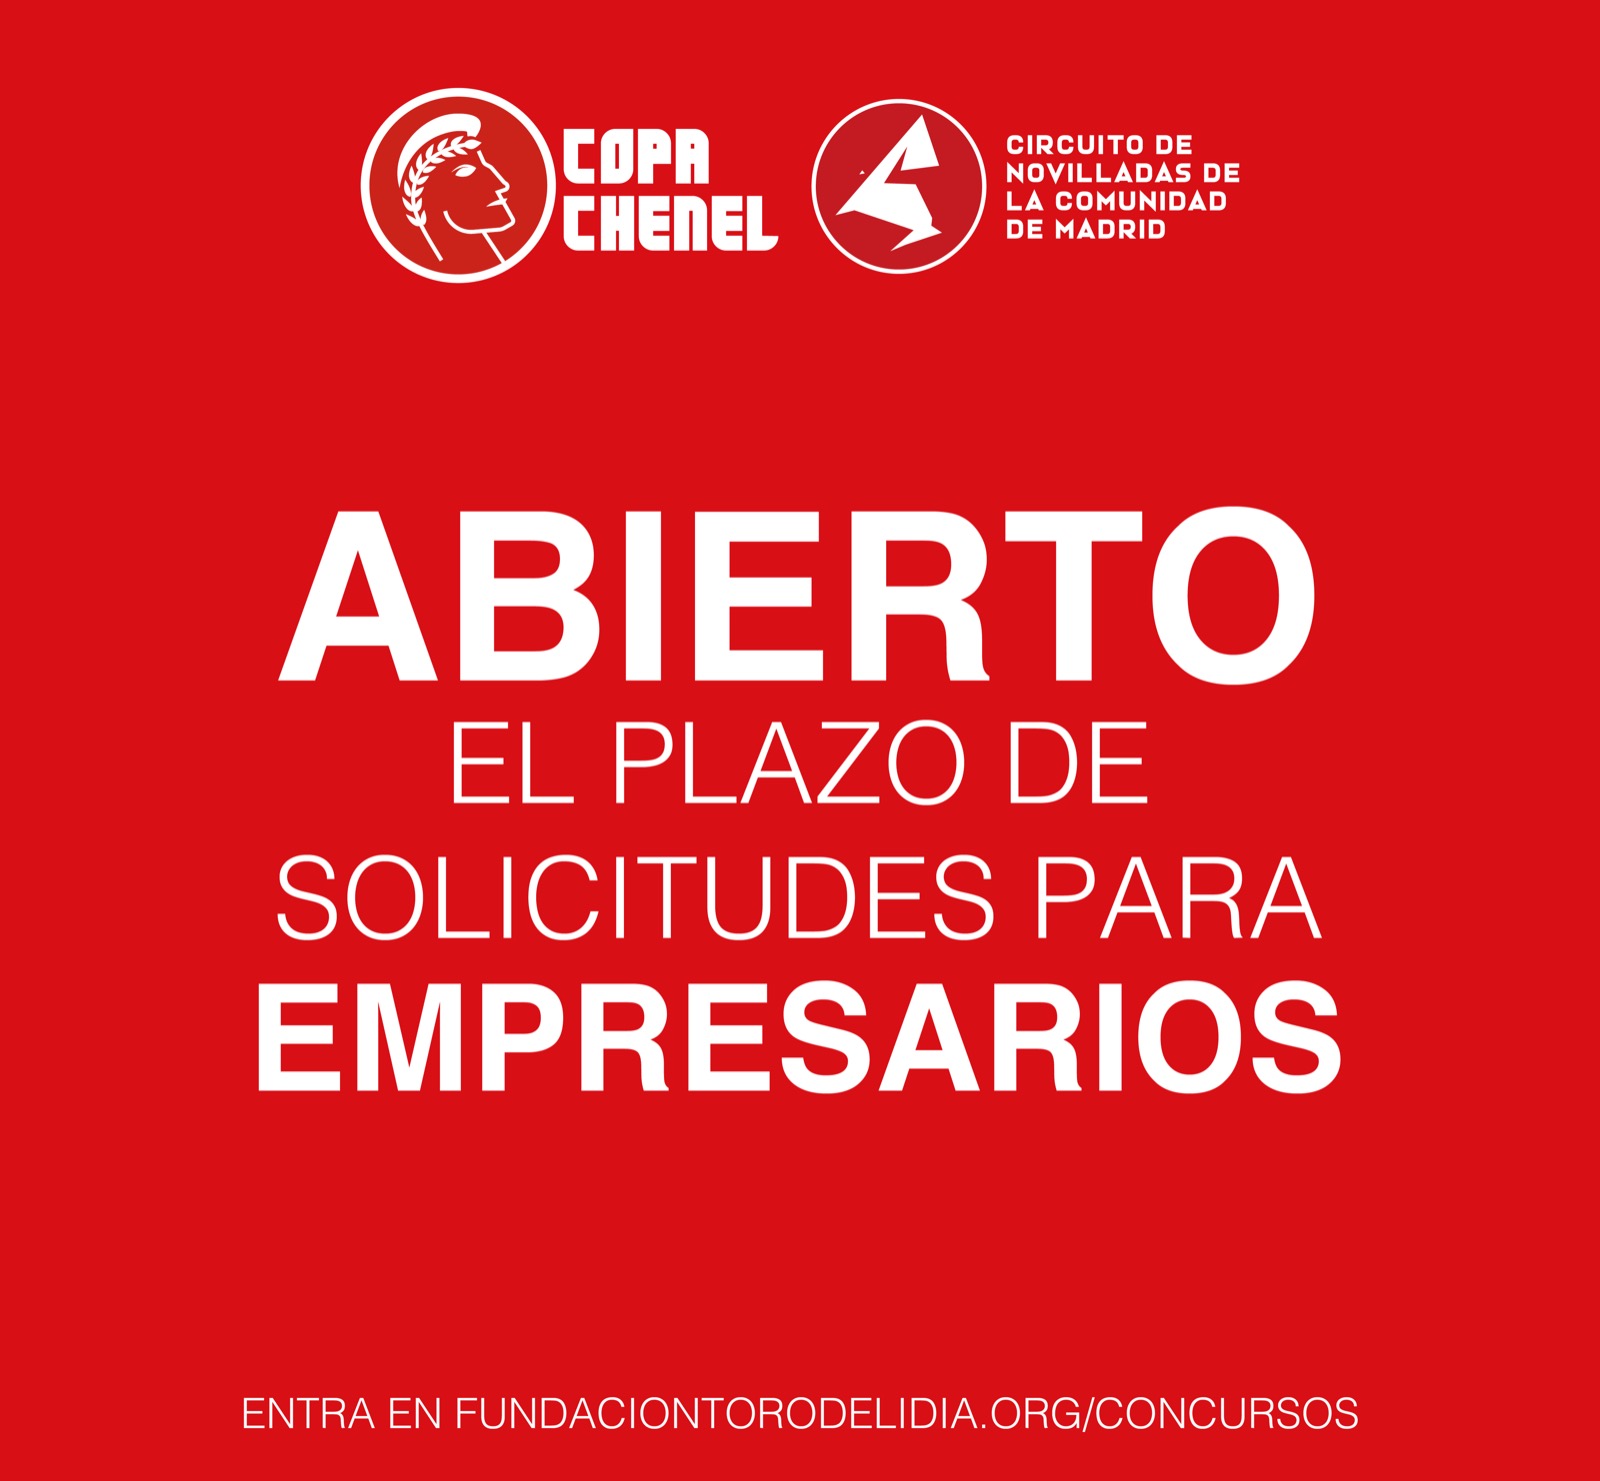 Abierto el plazo de inscripción para los empresarios en la Fiesta del Toro de la Comunidad de Madrid 